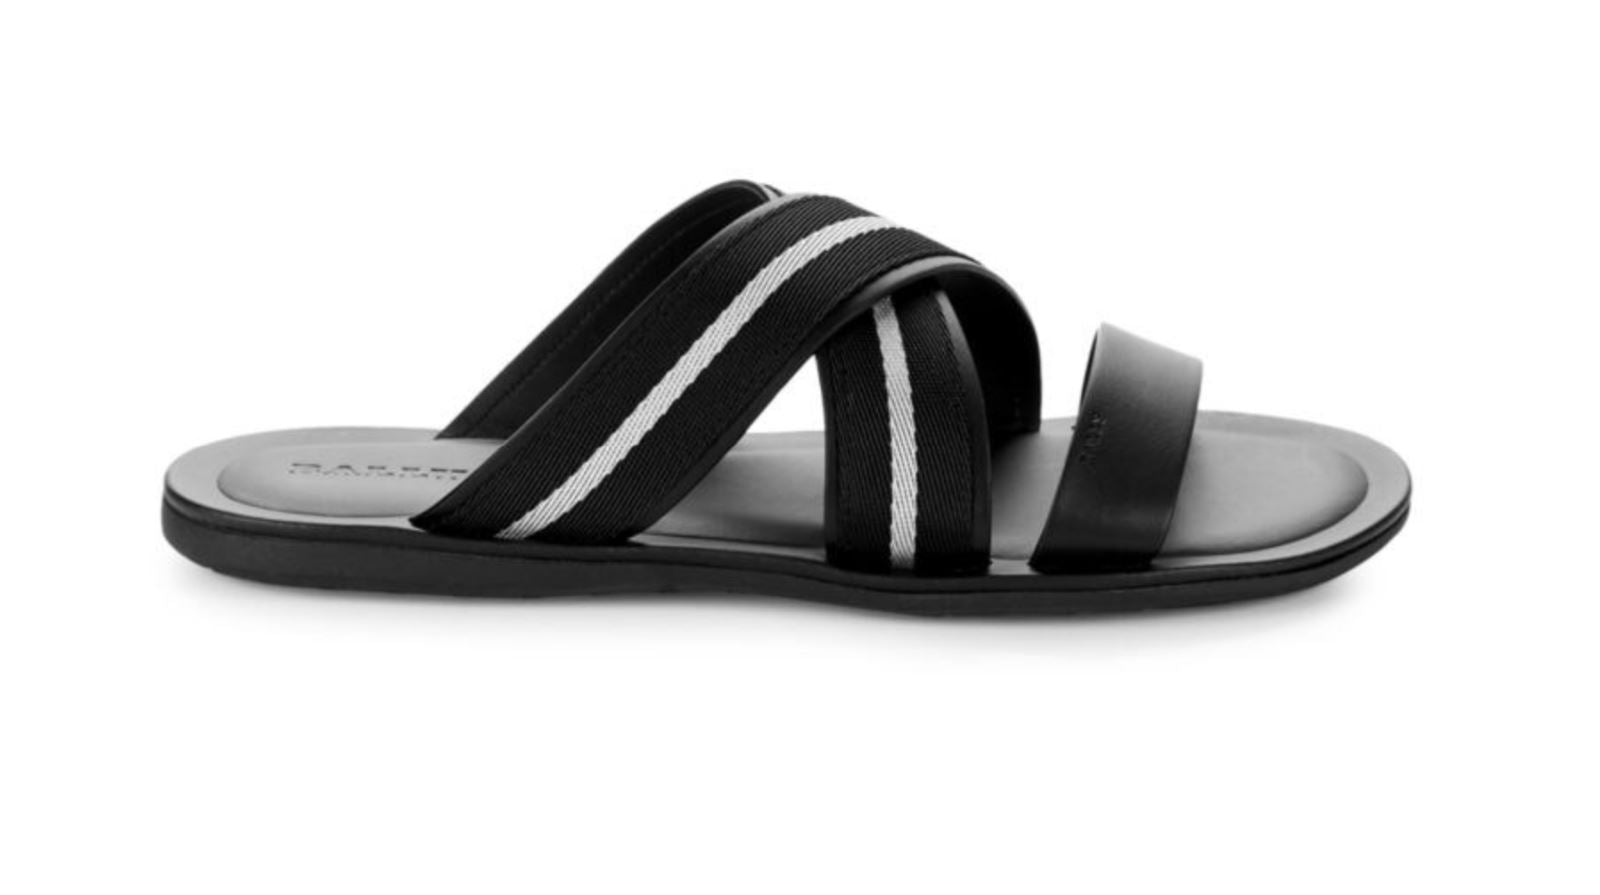 Мужские черные сандалии Bally Sasha Slide из текстиля и кожи стоимостью 450 долларов США 9, США 6234150 